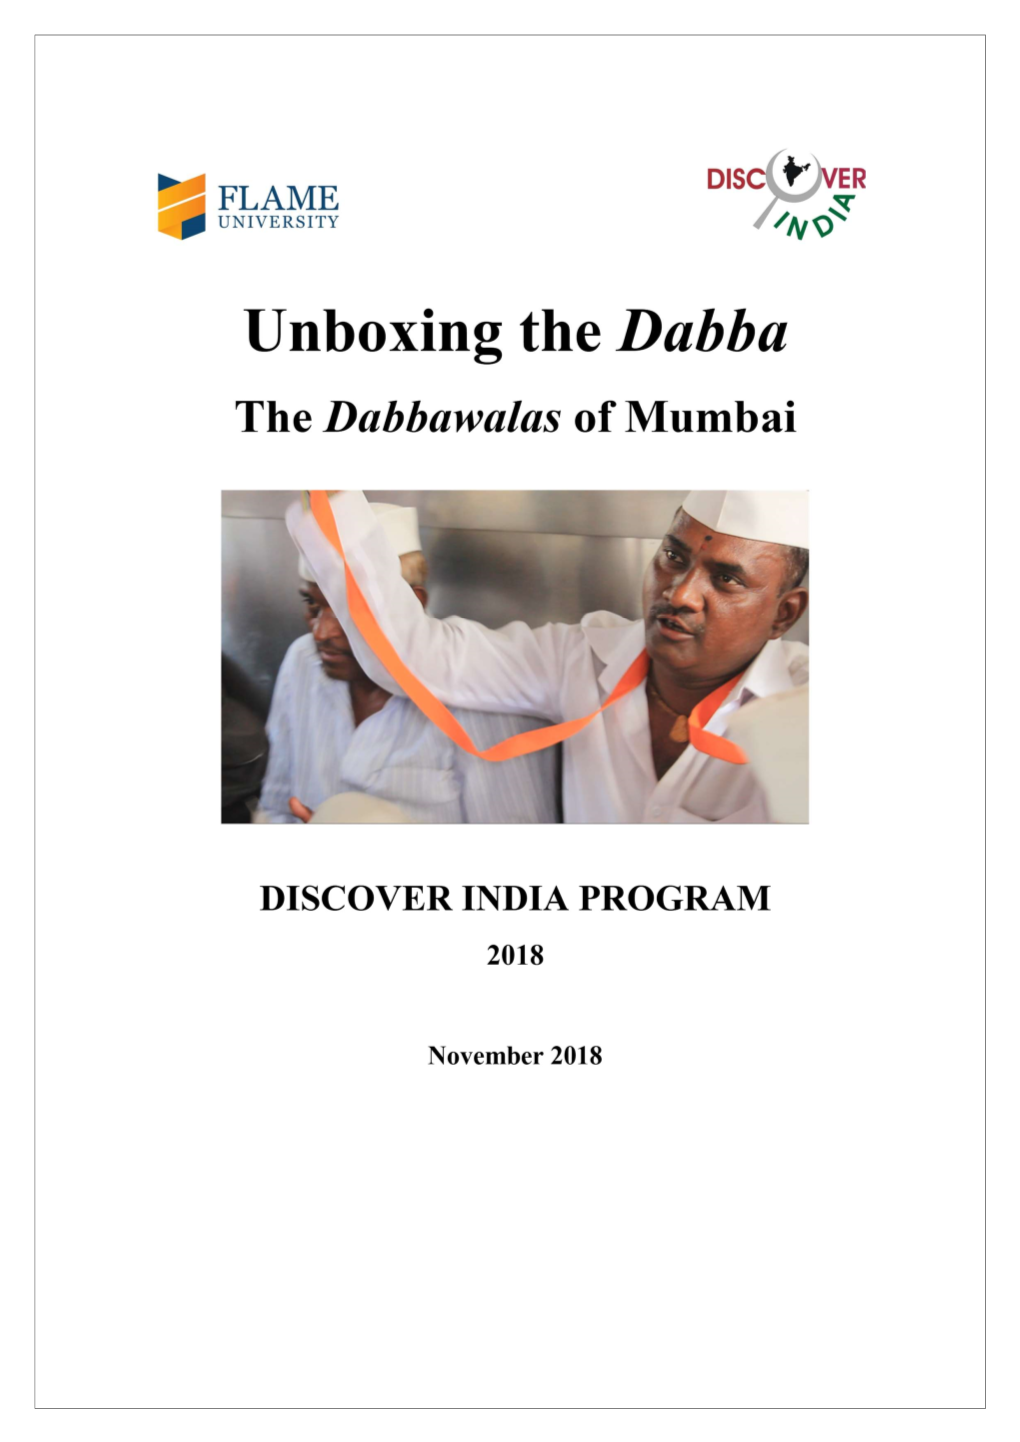 Dabbawalas of Mumbai